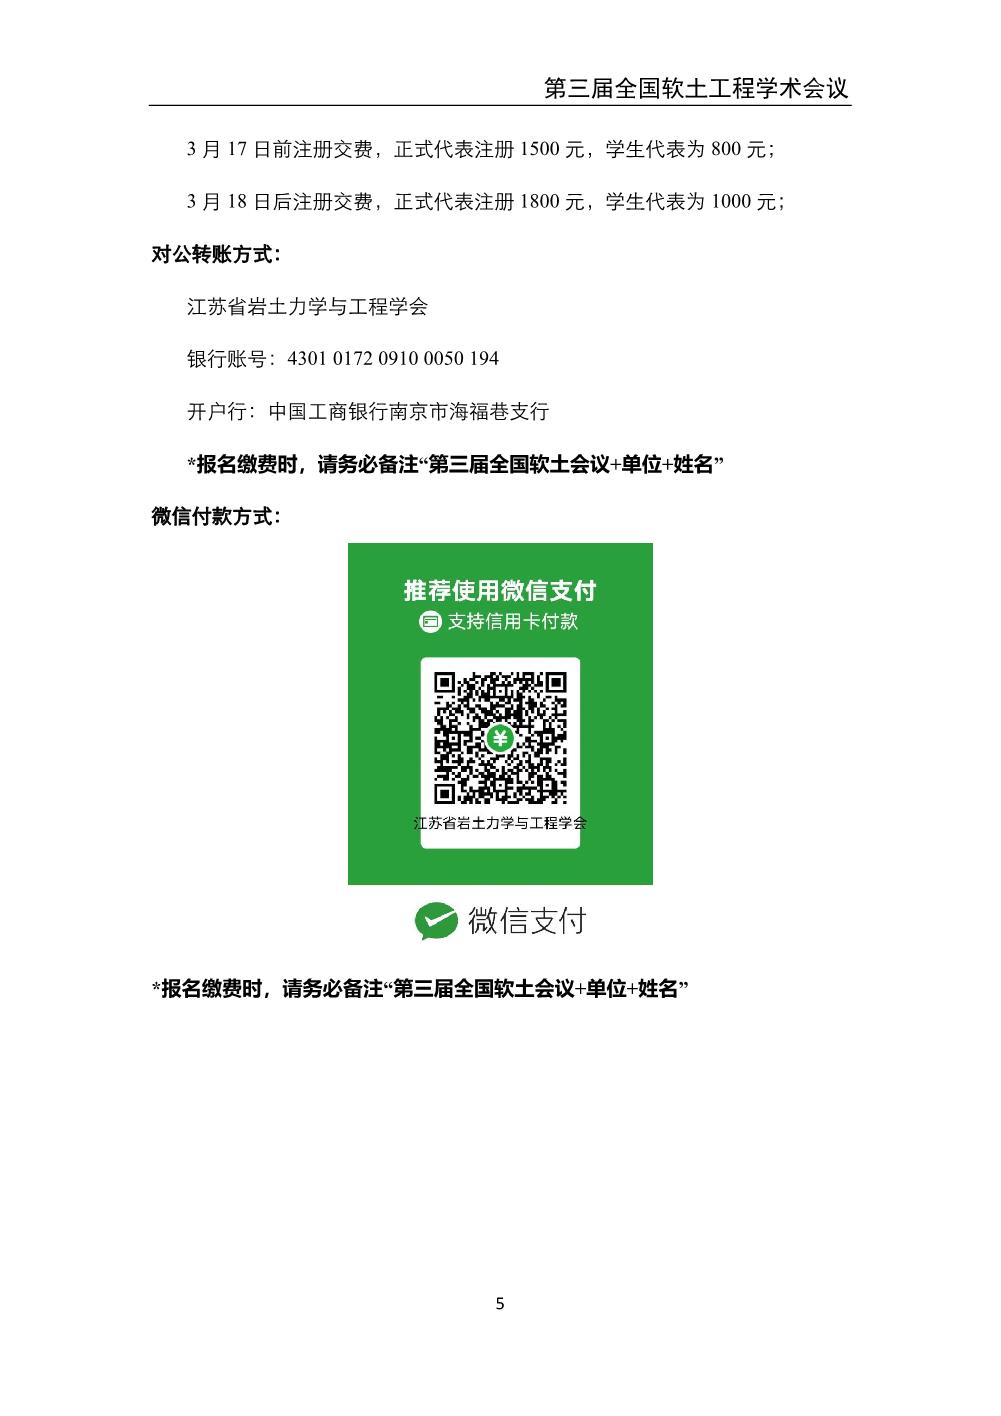 2023.3.24-26 南京 第三届全国软土工程学术会议-会议手册_7.jpg